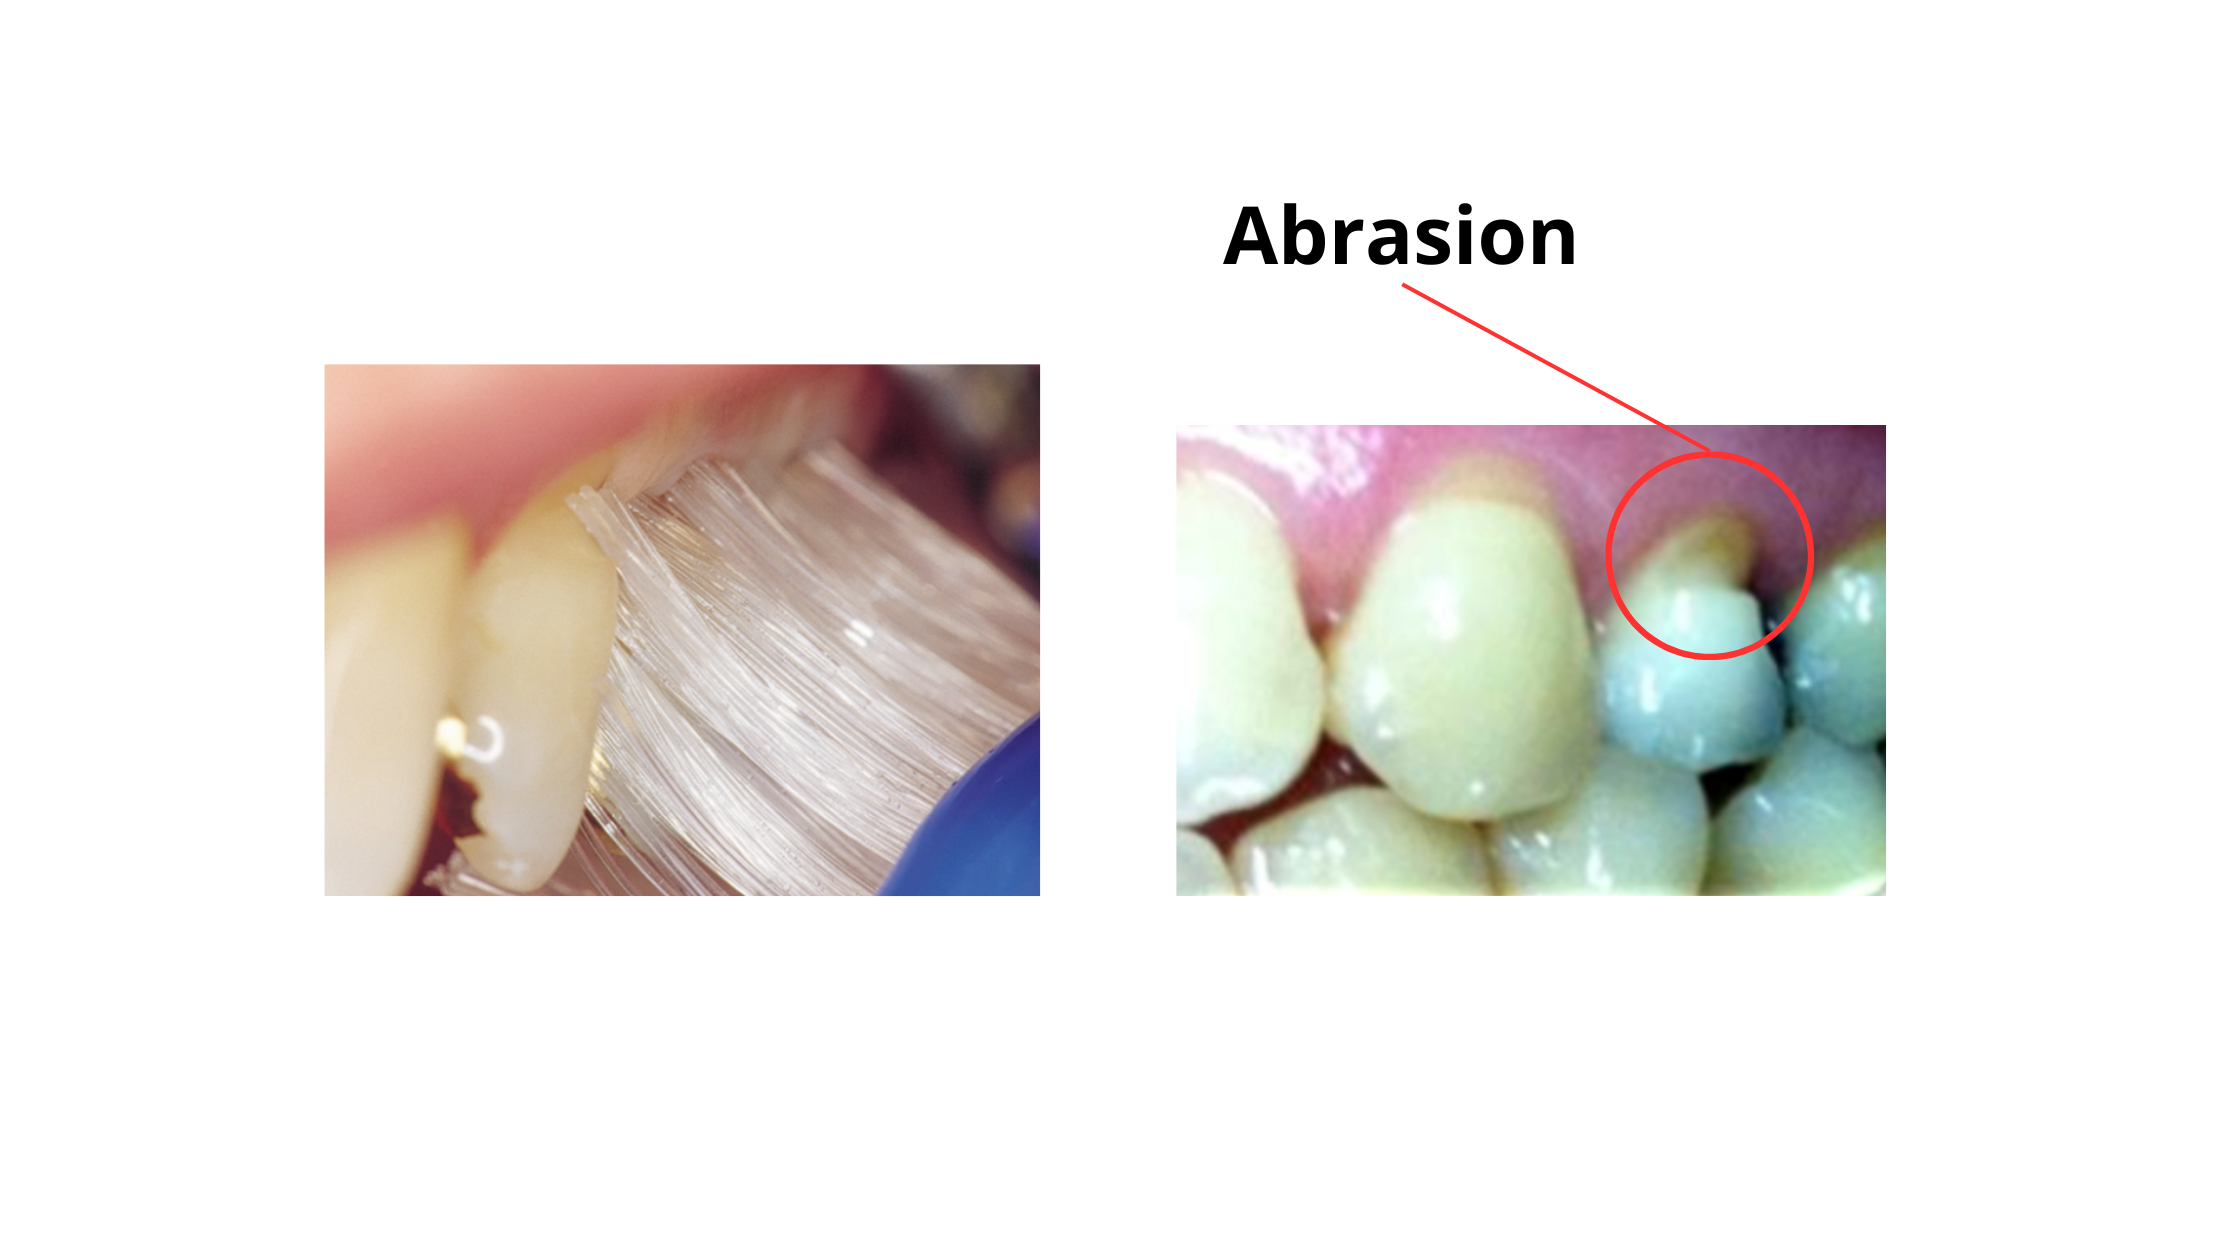 tooth abrasion due to hard toothbrushing